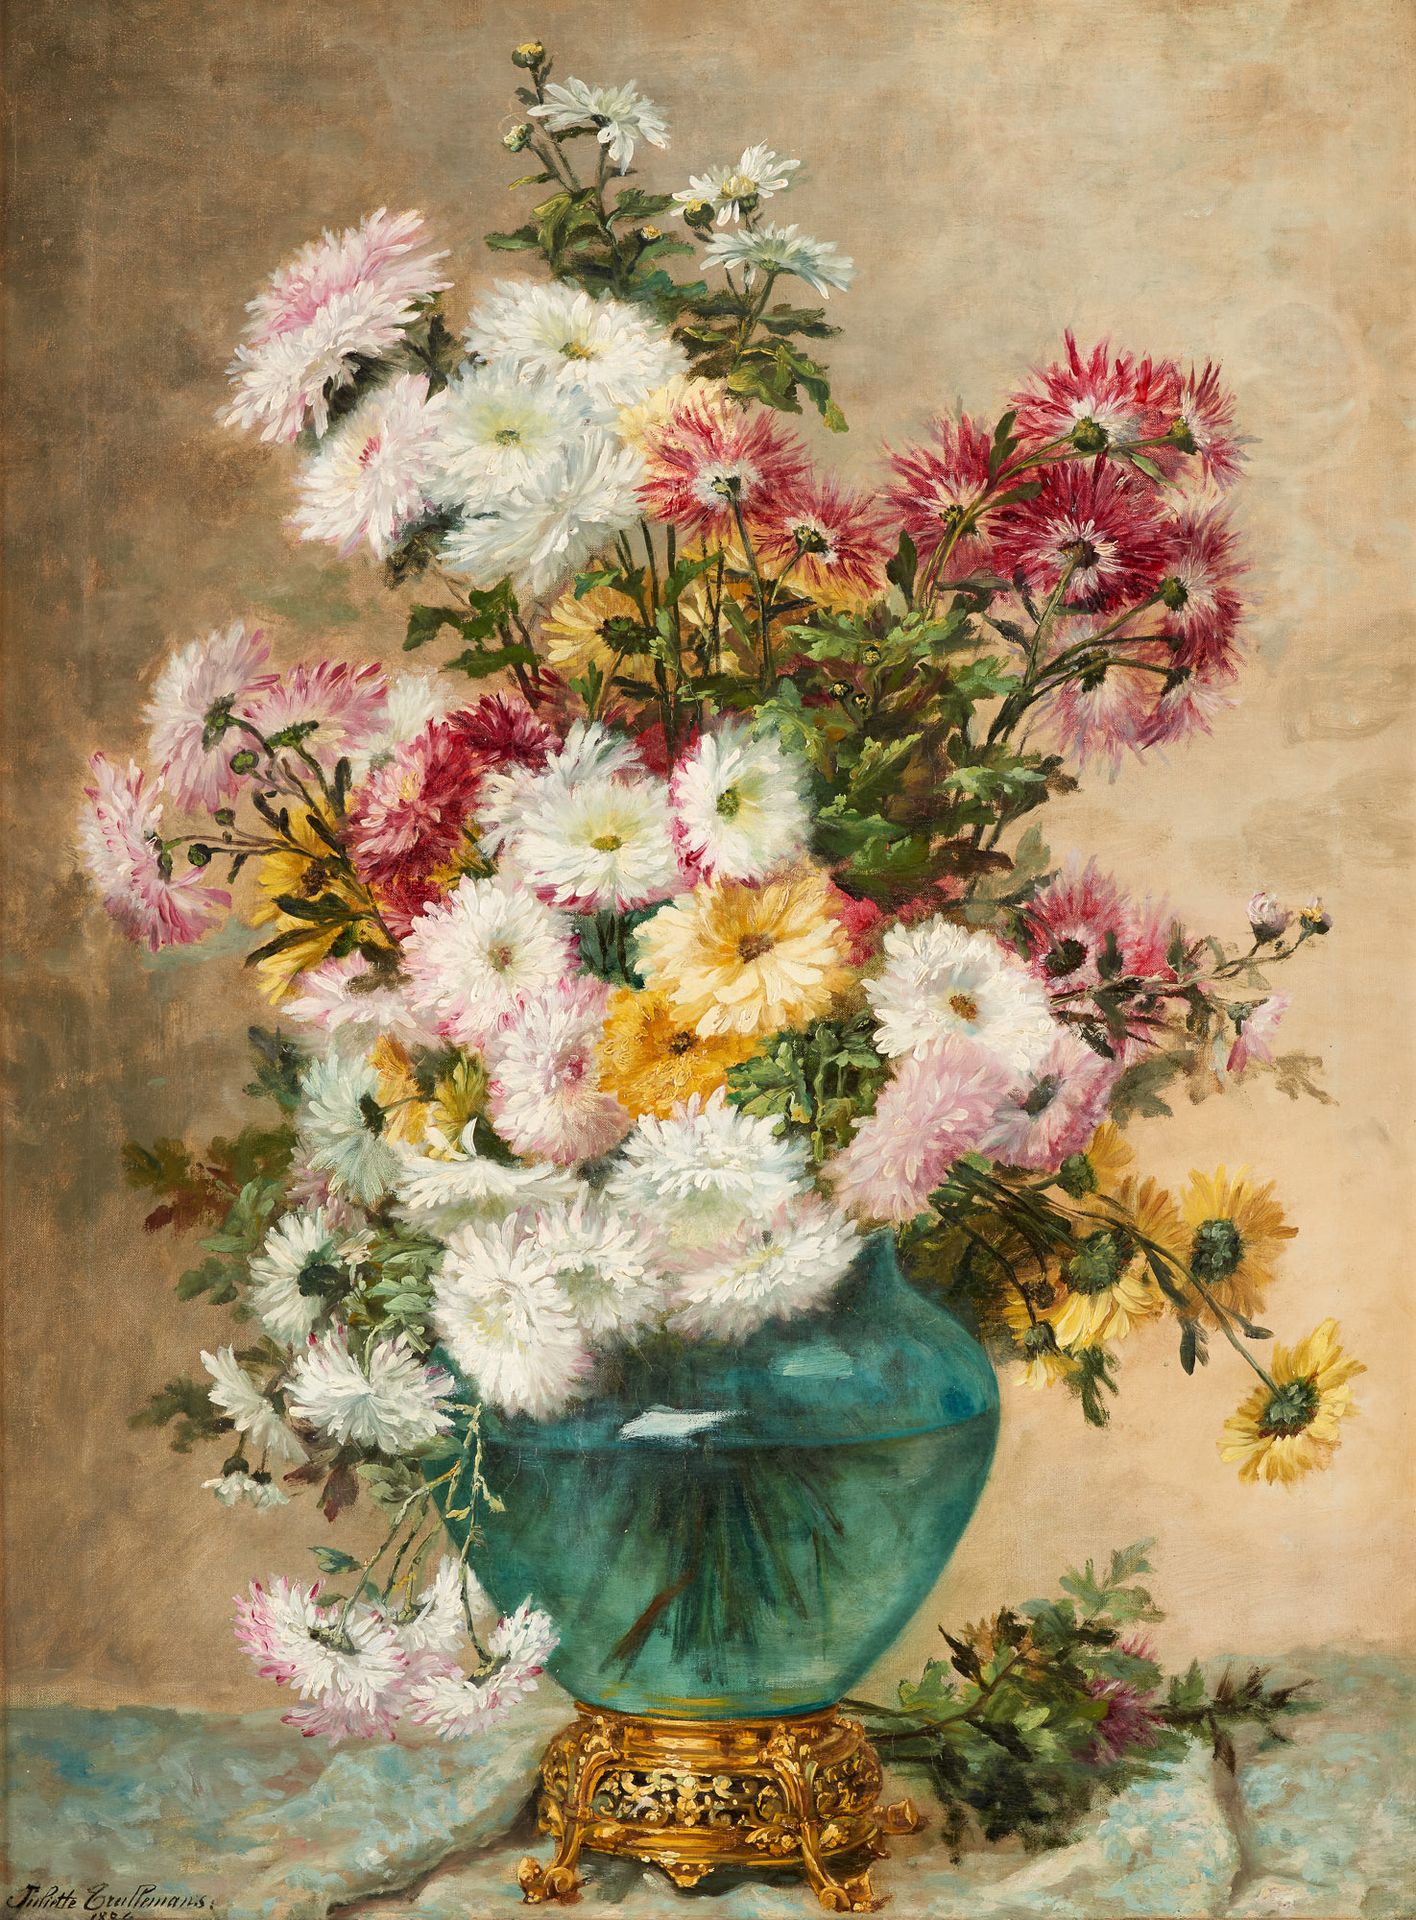 Juliette WYTSMAN École belge (1866-1925) Óleo sobre lienzo: Jarrón en flor.

Fir&hellip;